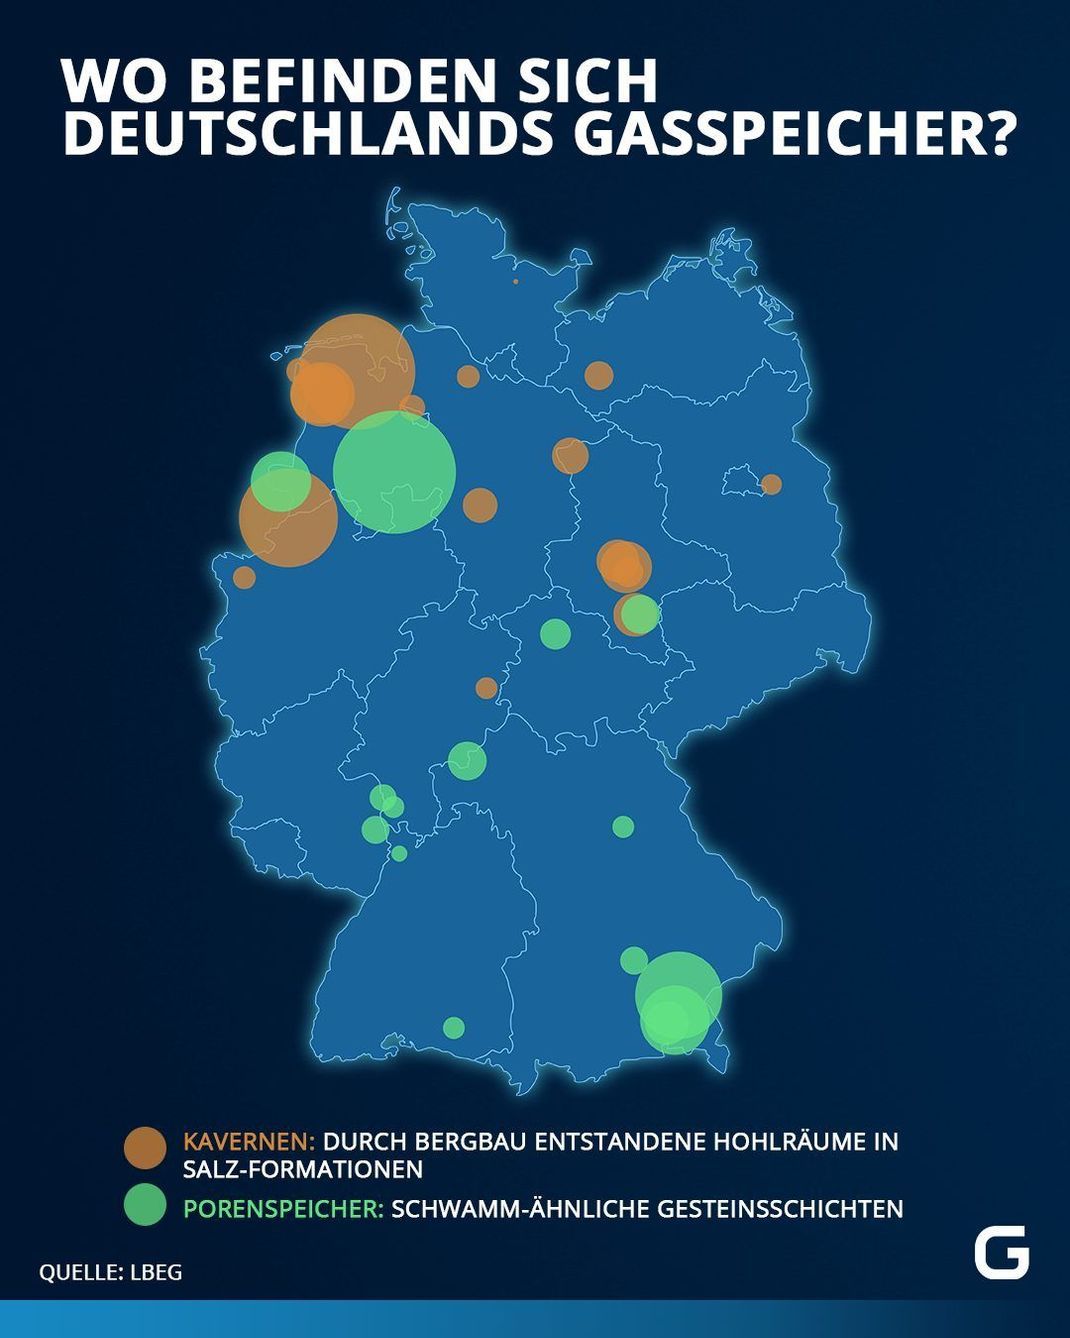 Gasspeicher: Lage von Kavernenspeicher und Porenspeicher in Deutschland.